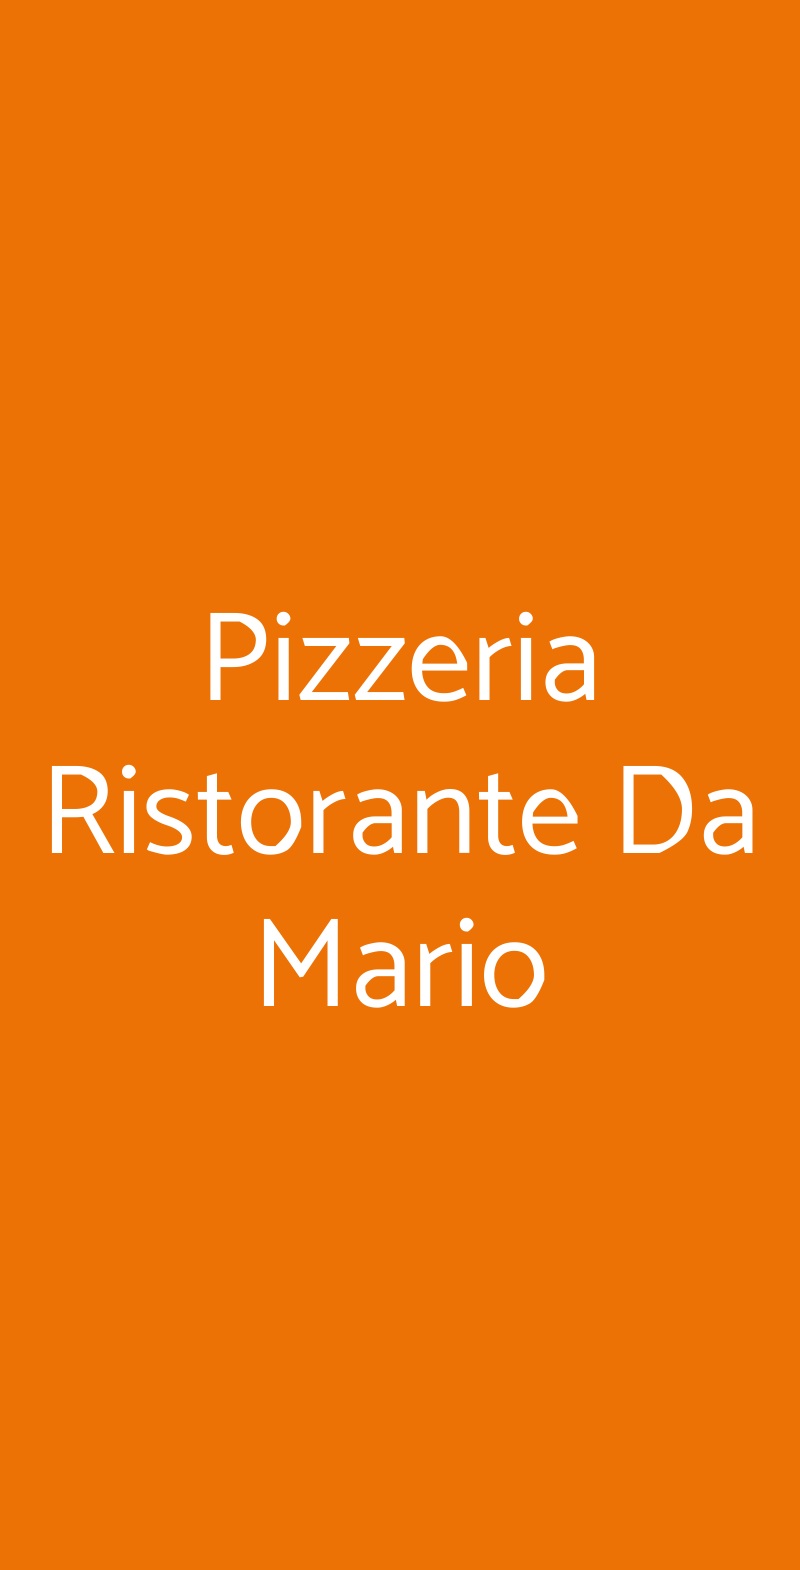 Pizzeria Ristorante Da Mario Savona menù 1 pagina